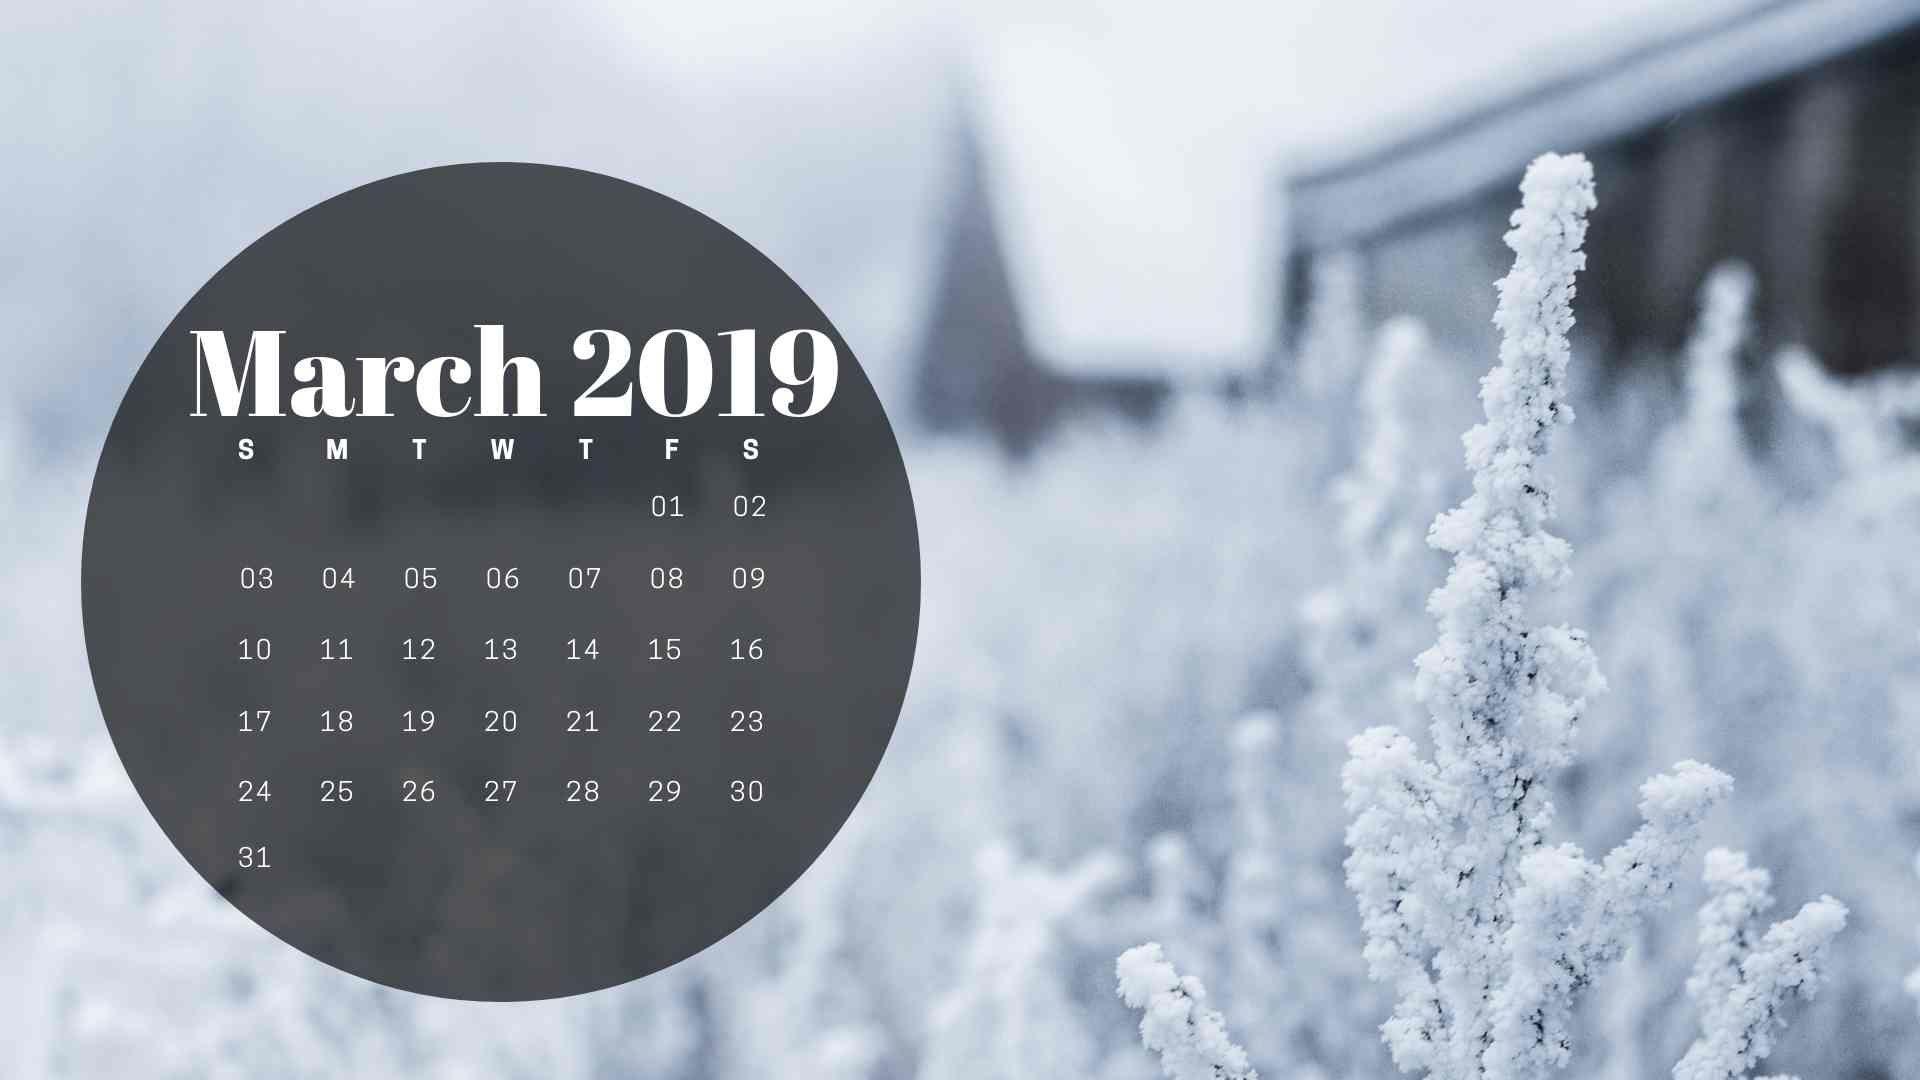 March 2019 Calendar Wallpaper Background Photo. Calendar 2019